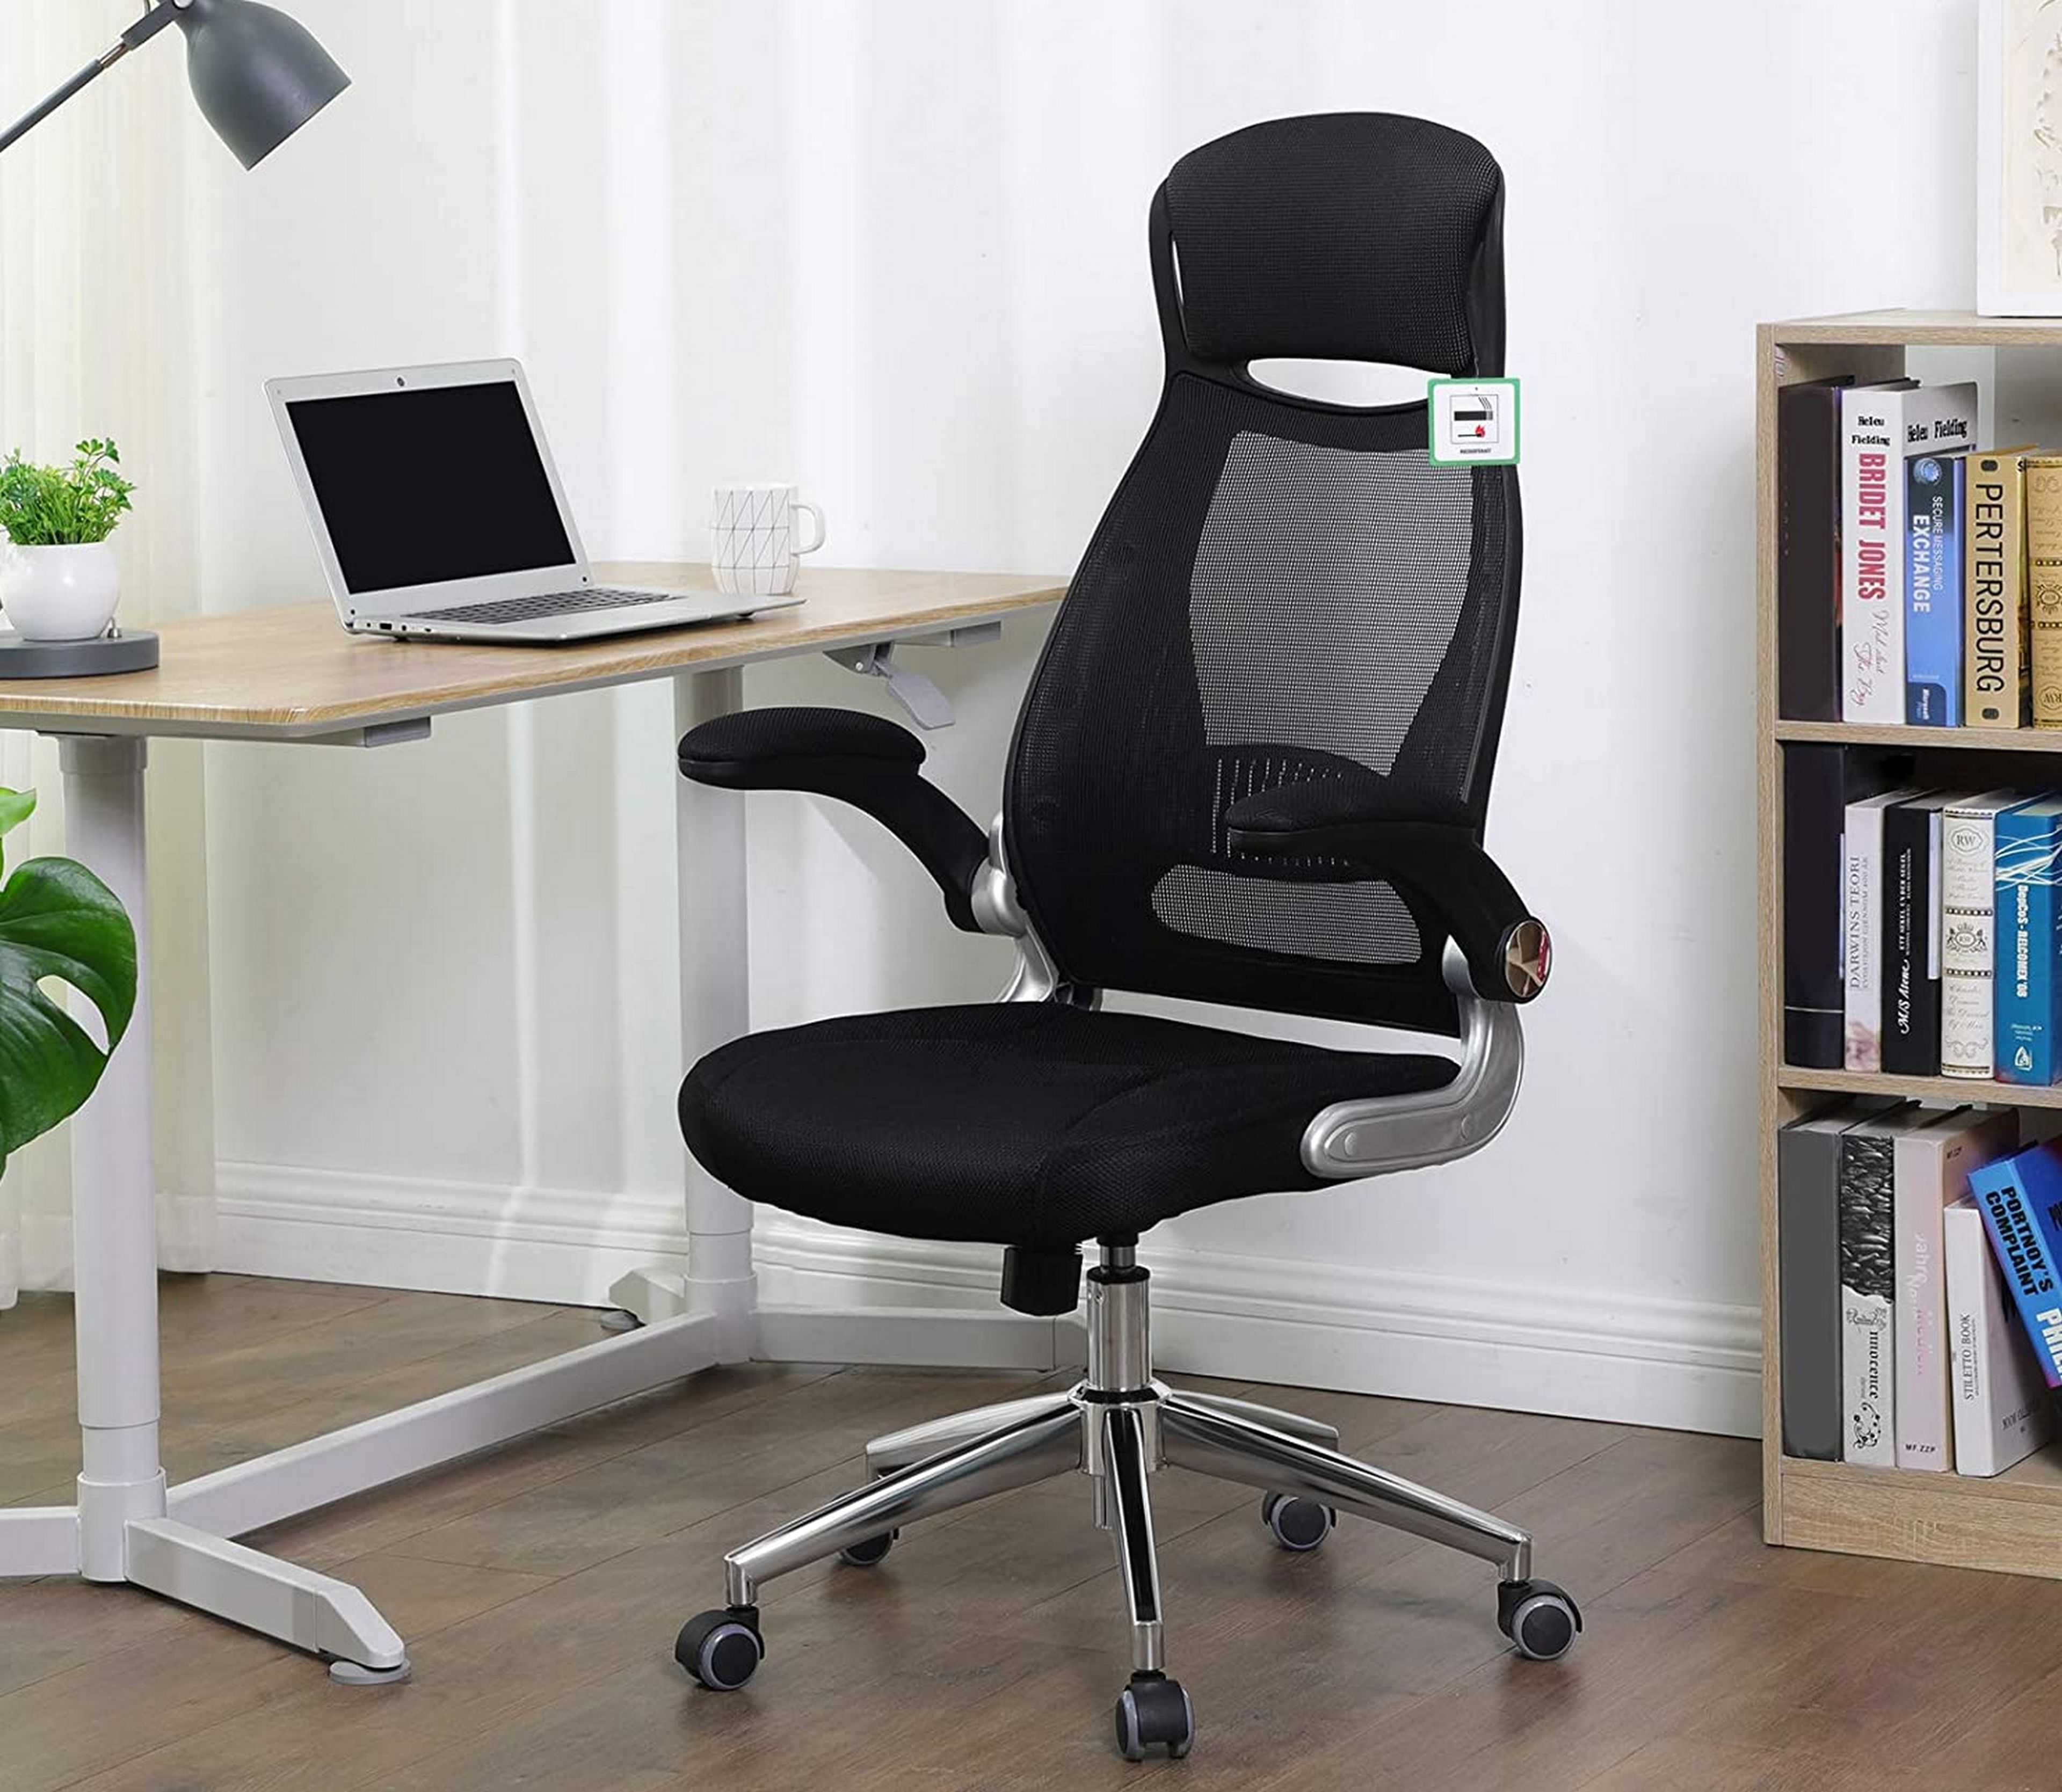 Esta silla giratoria oficina con reposacabezas está precio de derribo | Computer Hoy